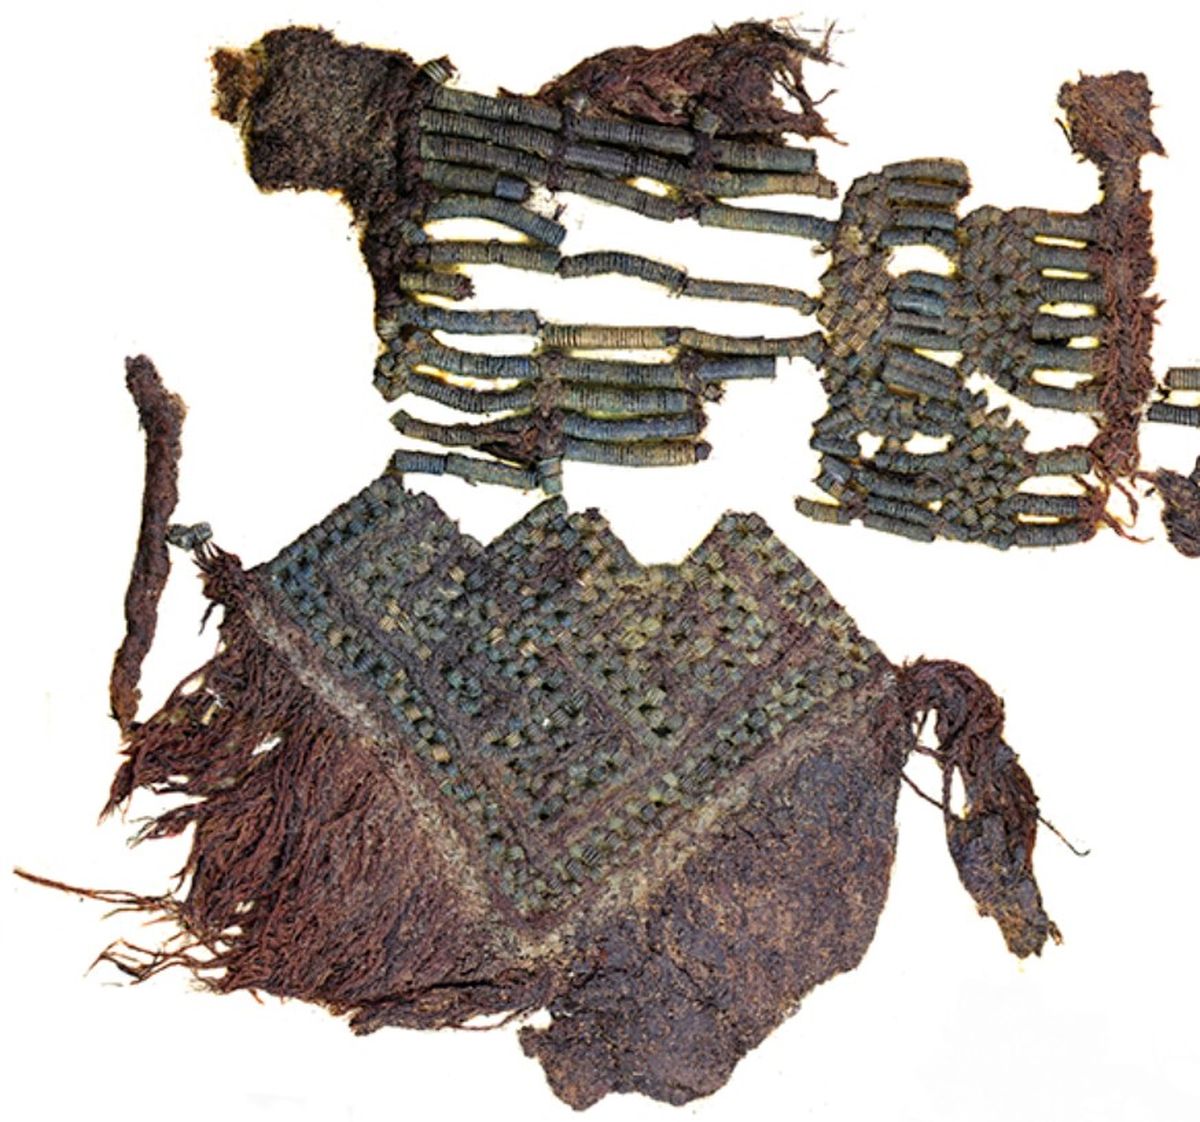 Võromaalt Virunukalt keskaegsest naisematusest leitud villasest lõngast ja pronksspiraalidest tagapõlle jäänused.